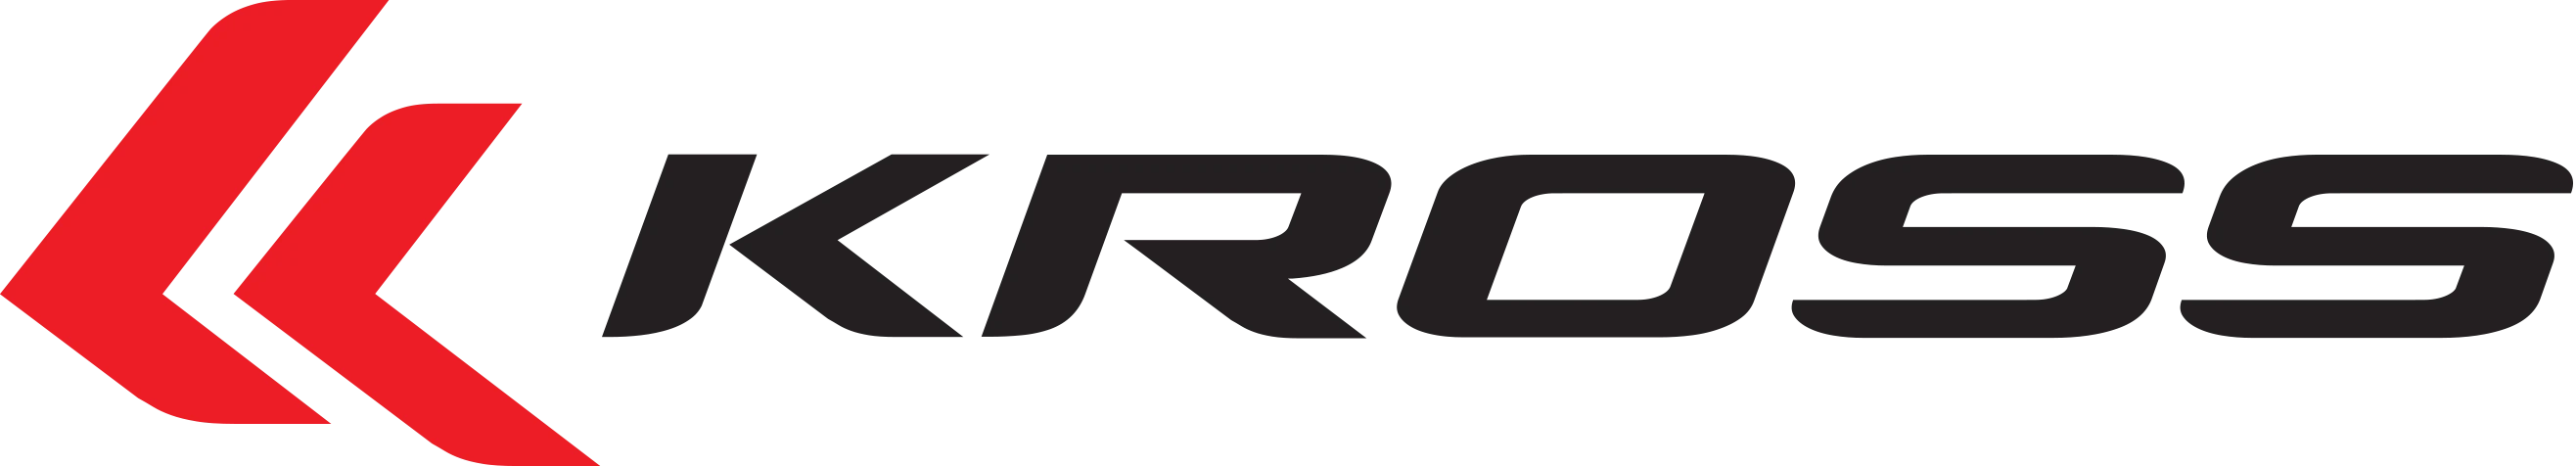 Kross logo